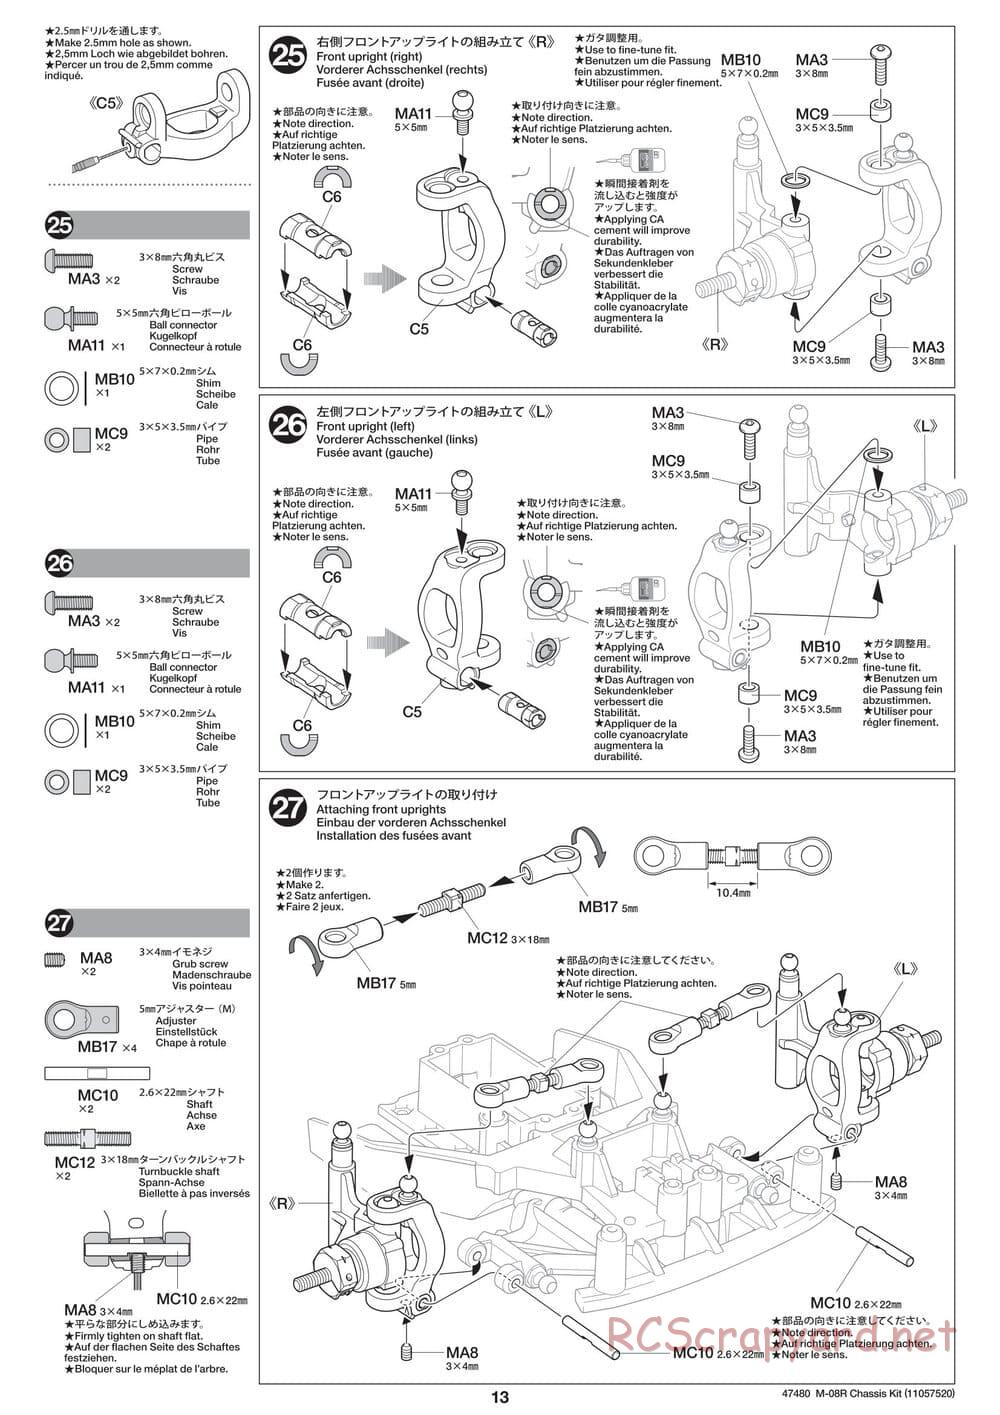 Tamiya - M-08R Chassis - Manual - Page 13